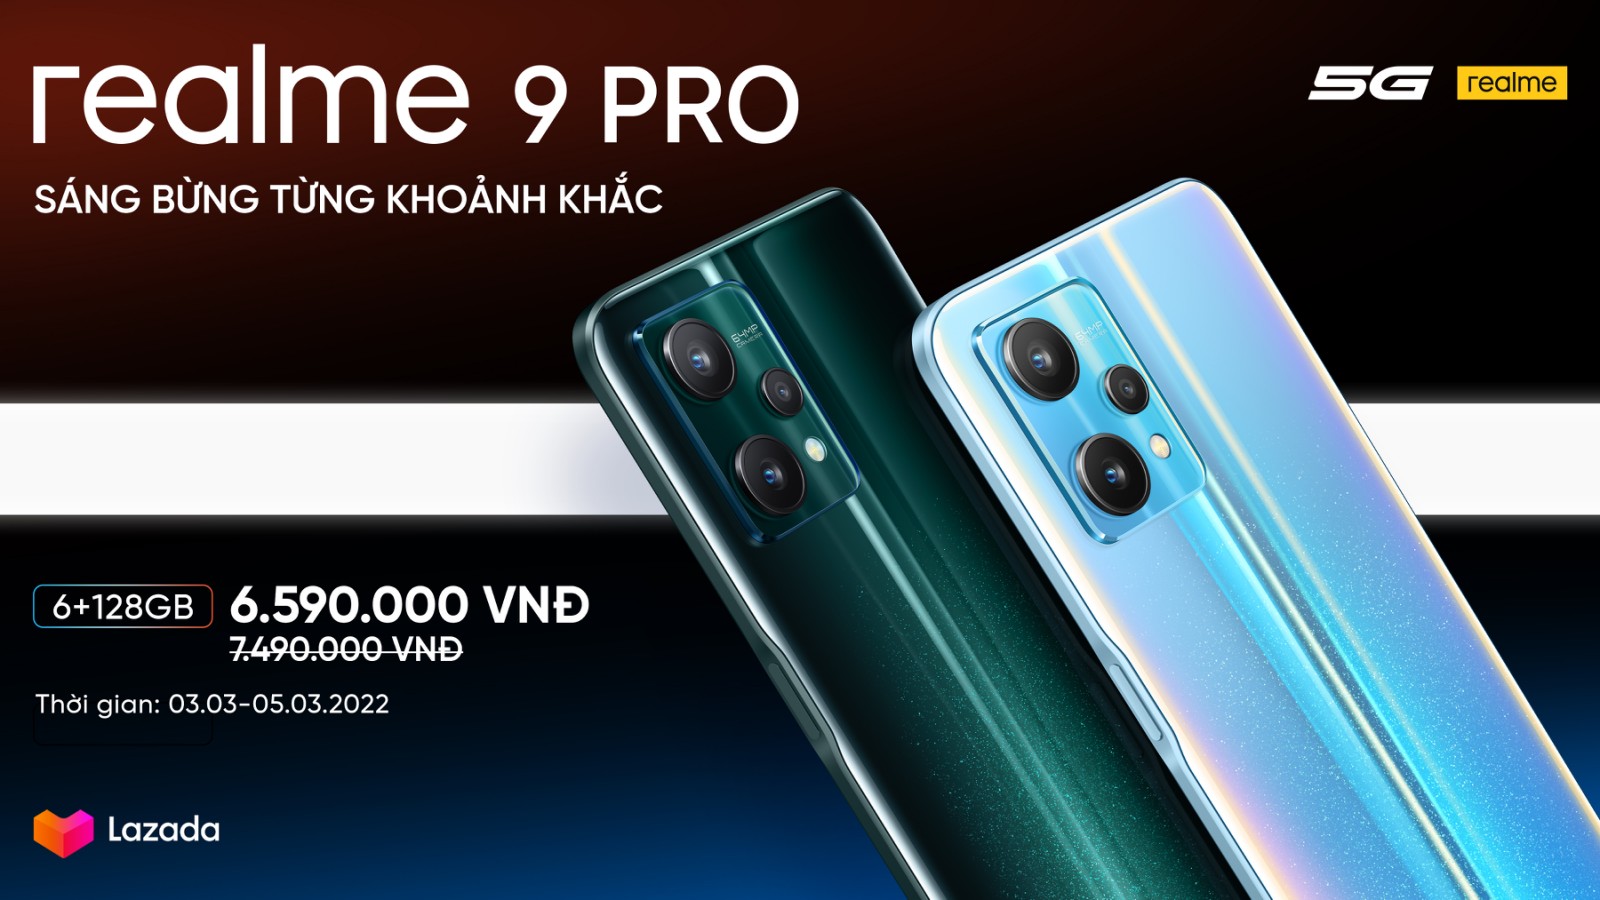 Chính thức công bố giá bán realme 9 Pro Series tại thị trường Việt Nam